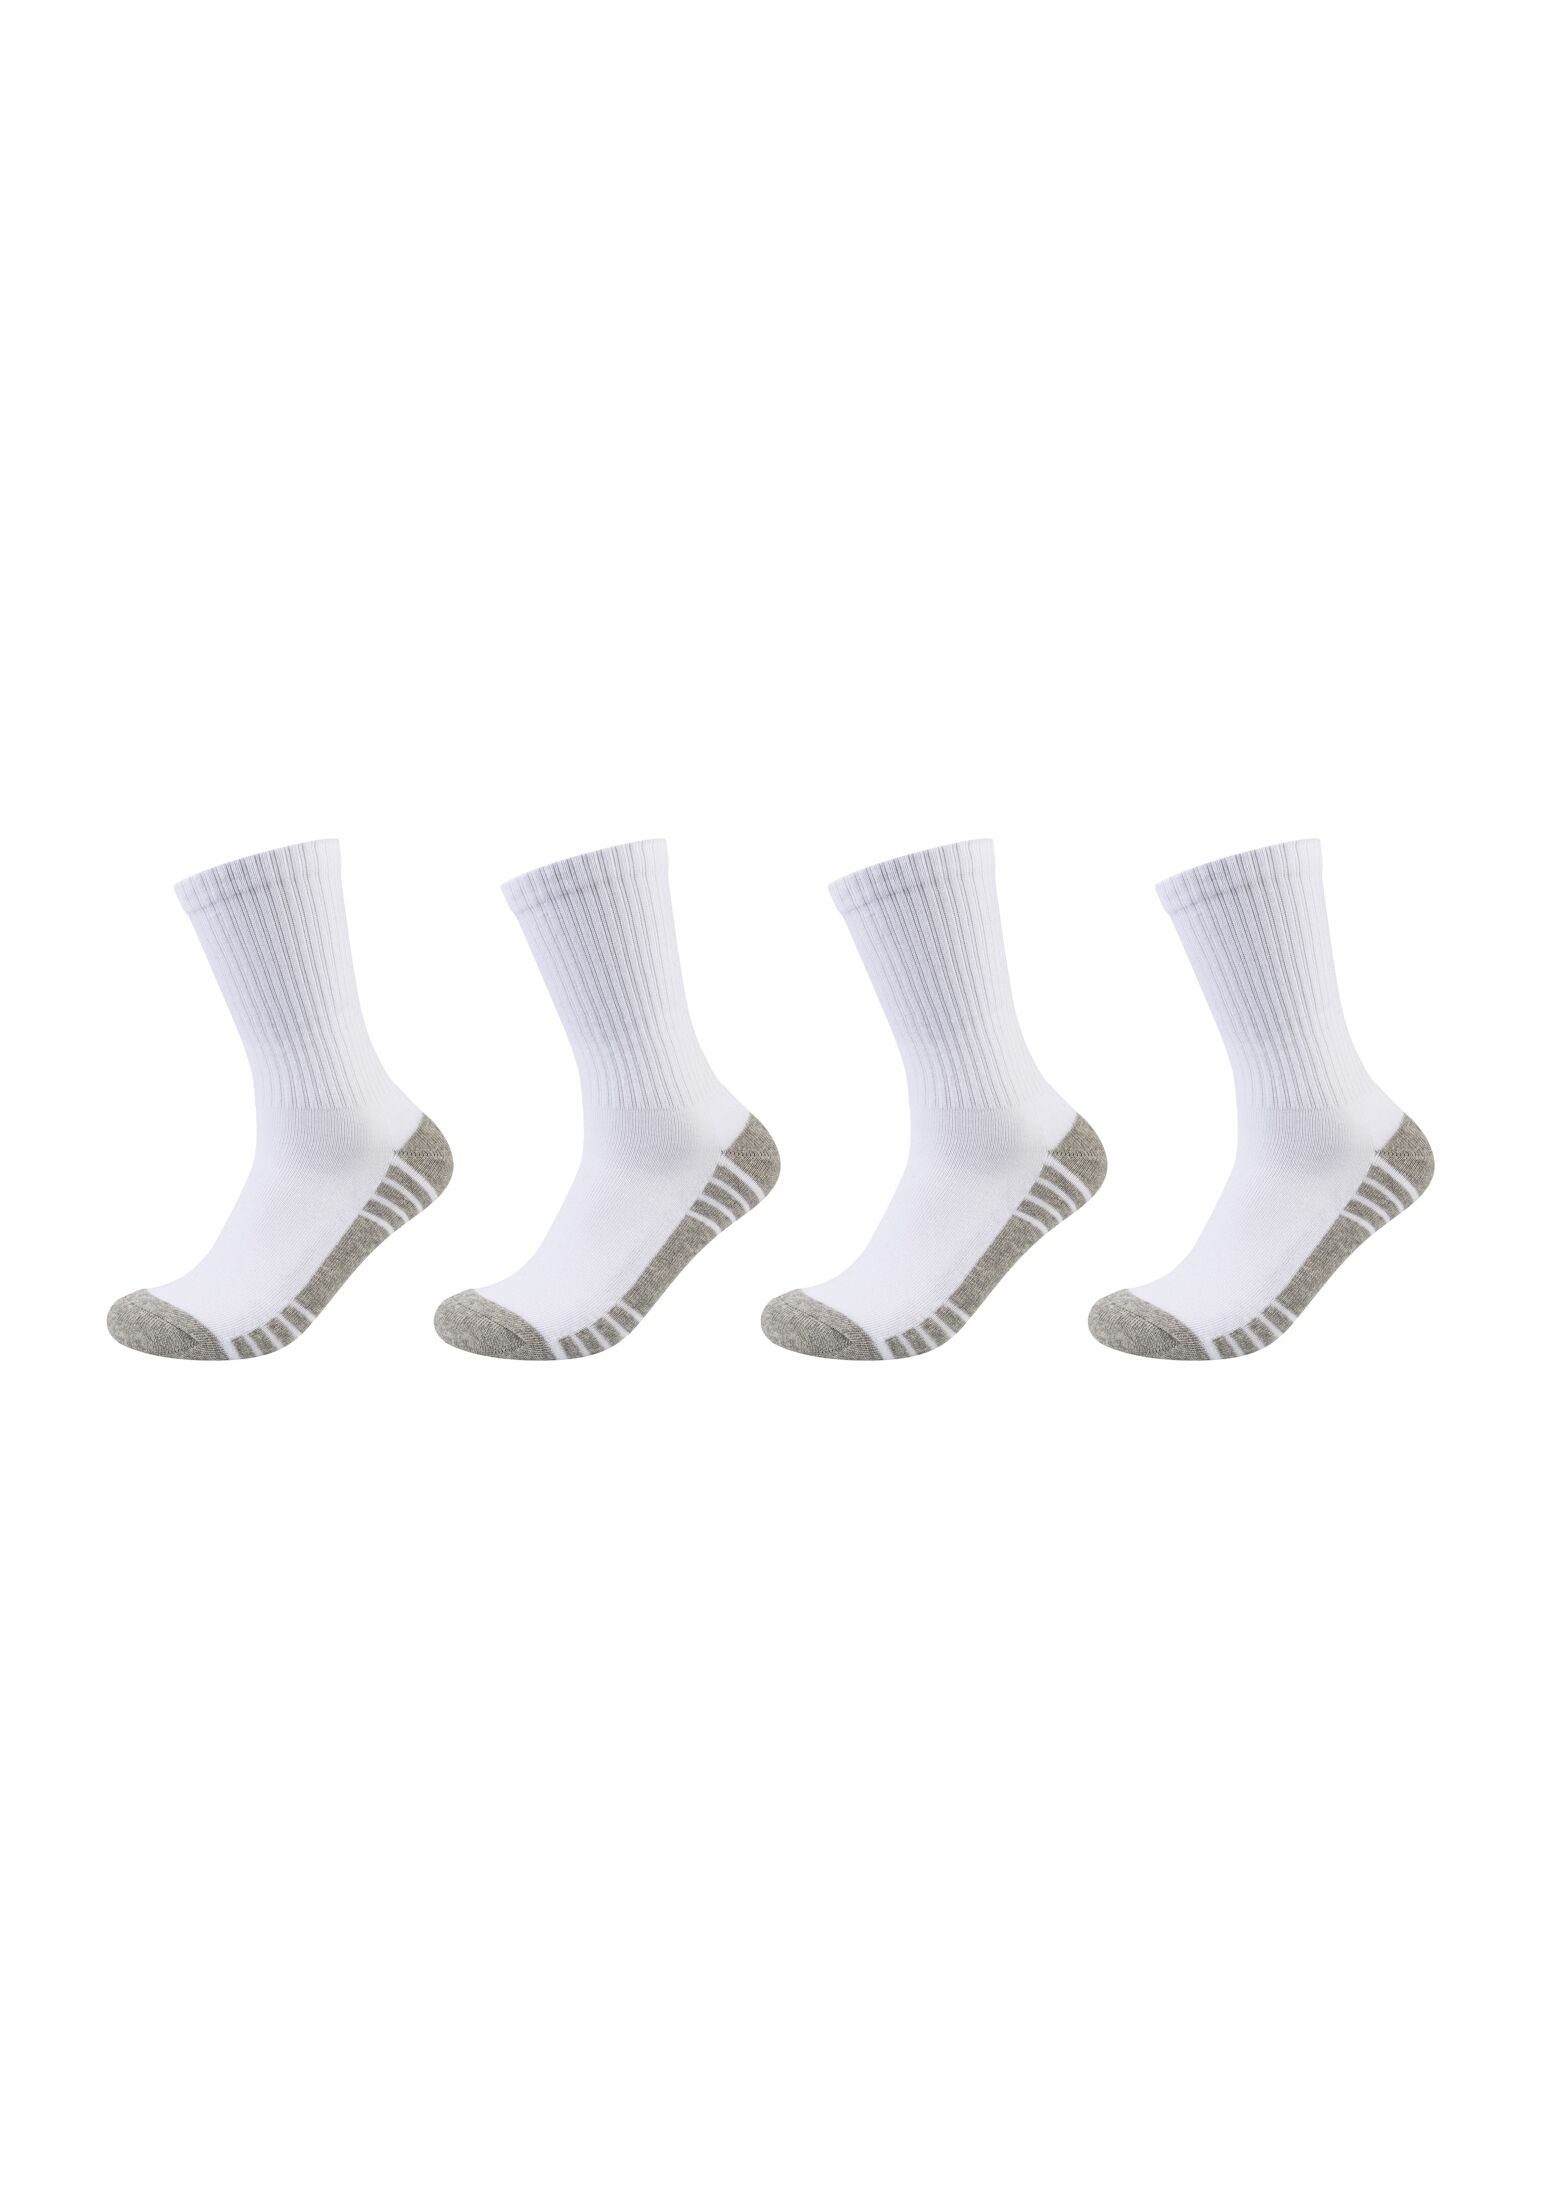 Skechers Socken Tennissocken 4er Pack mix white